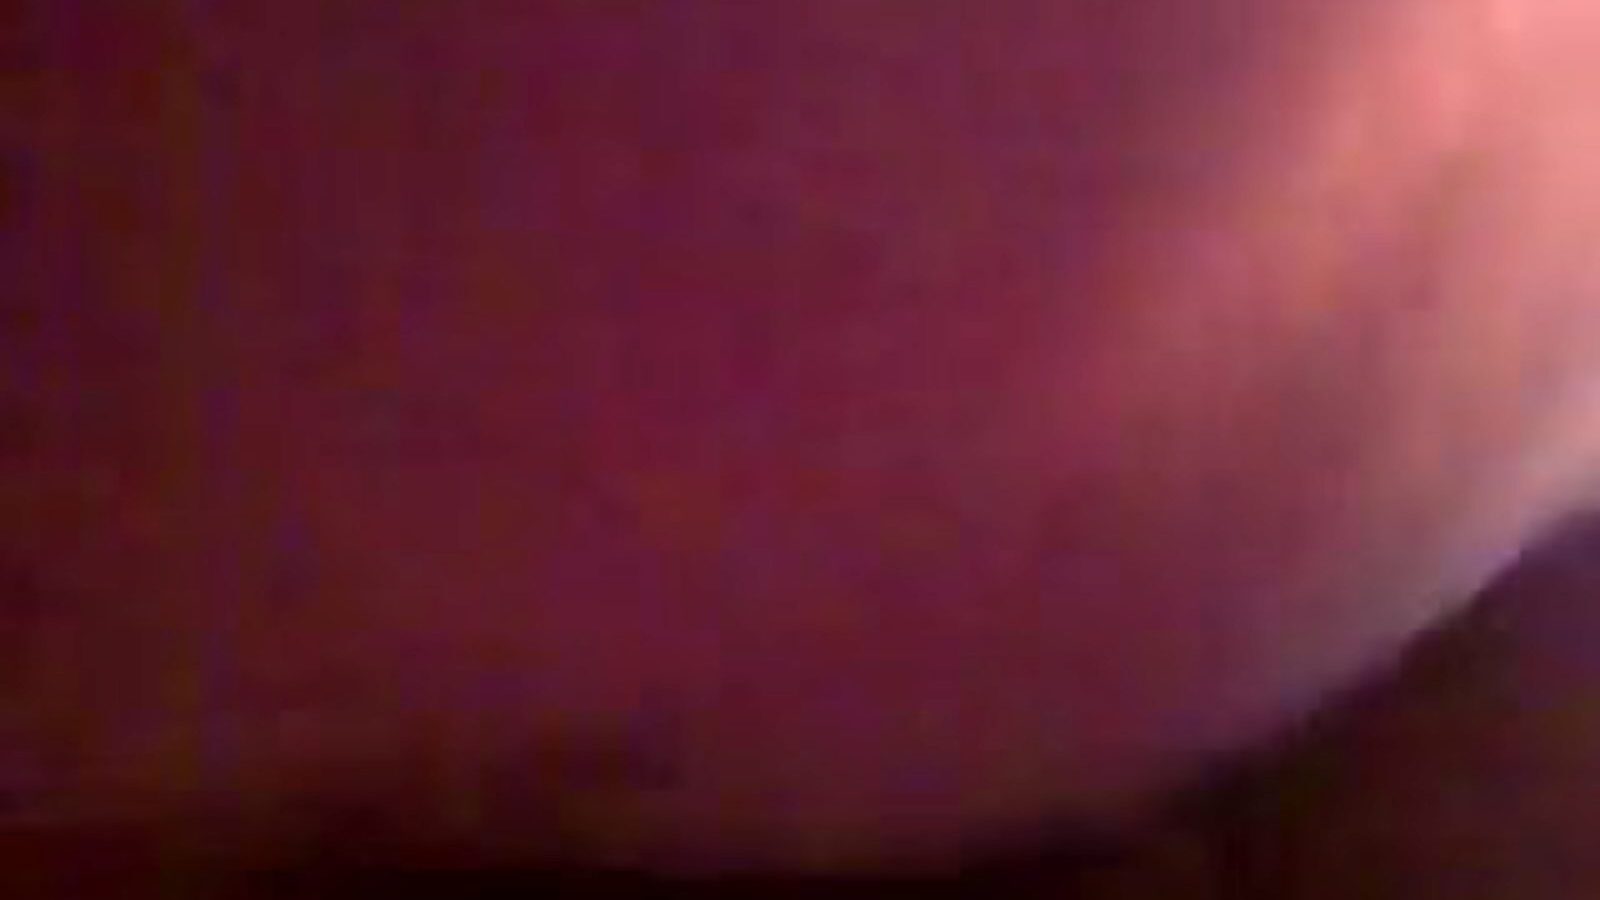 une explosion de jouissance, free tight pussy porn video 3c mira une explosion de jouissance clip en xhamster, el sitio web de tubo fucky-fucky más grande con toneladas de películas pornográficas francesas asiáticas y apretadas gratis